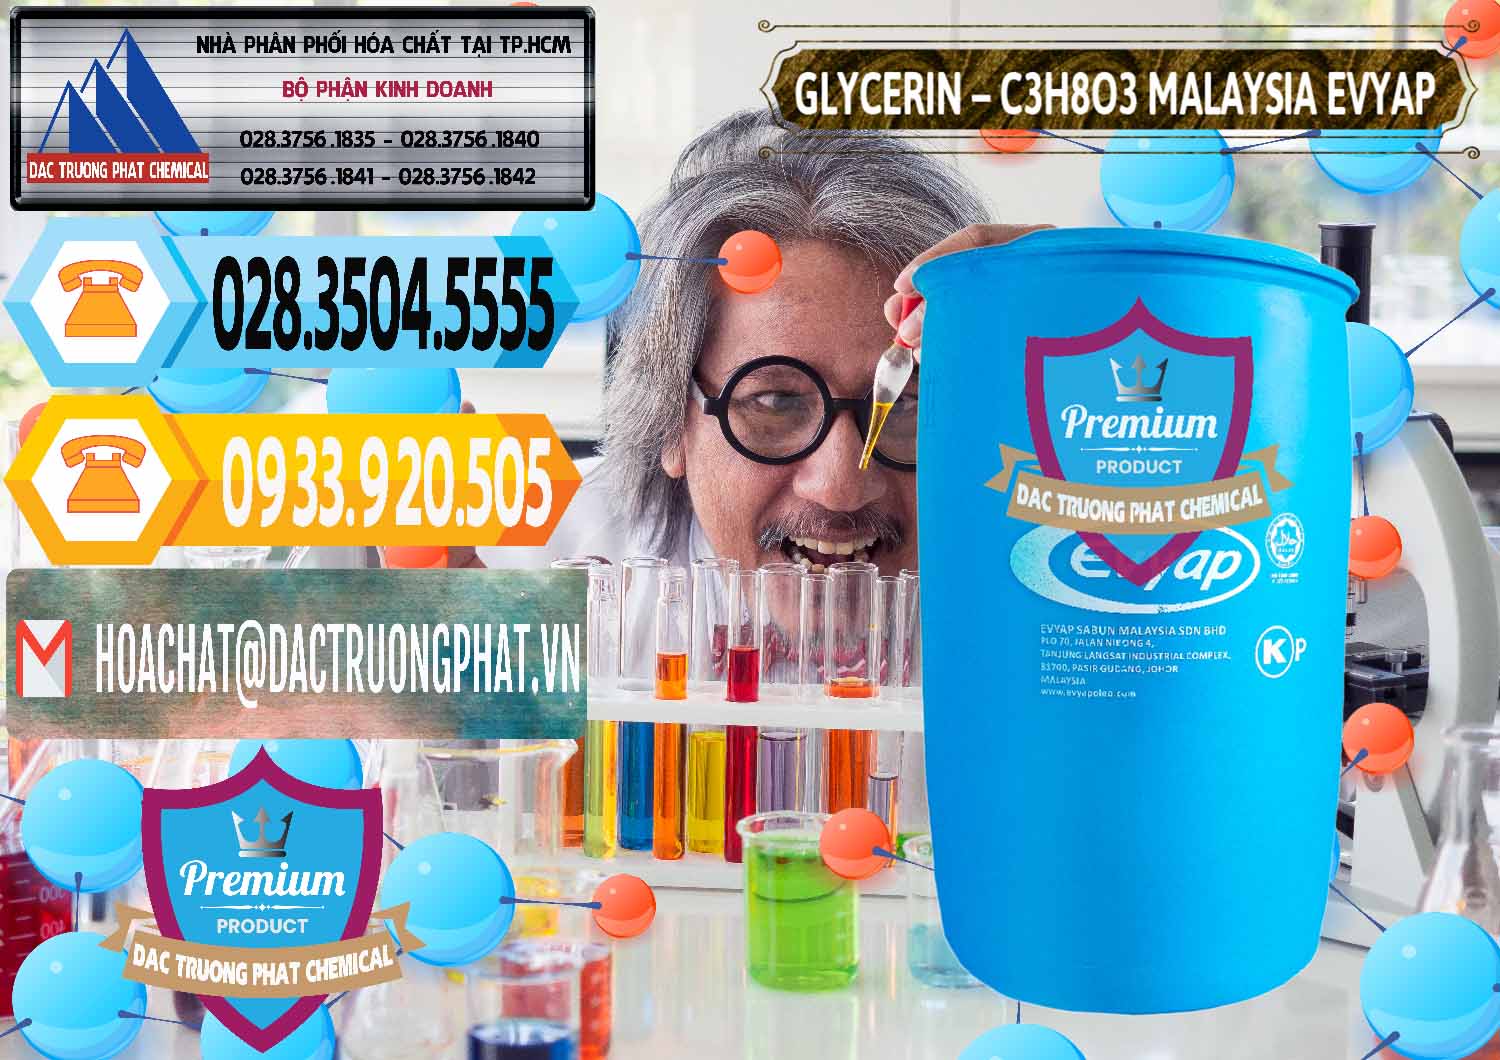 Đơn vị chuyên bán & cung cấp Glycerin – C3H8O3 Malaysia Evyap - 0066 - Nơi phân phối ( cung cấp ) hóa chất tại TP.HCM - hoachattayrua.net